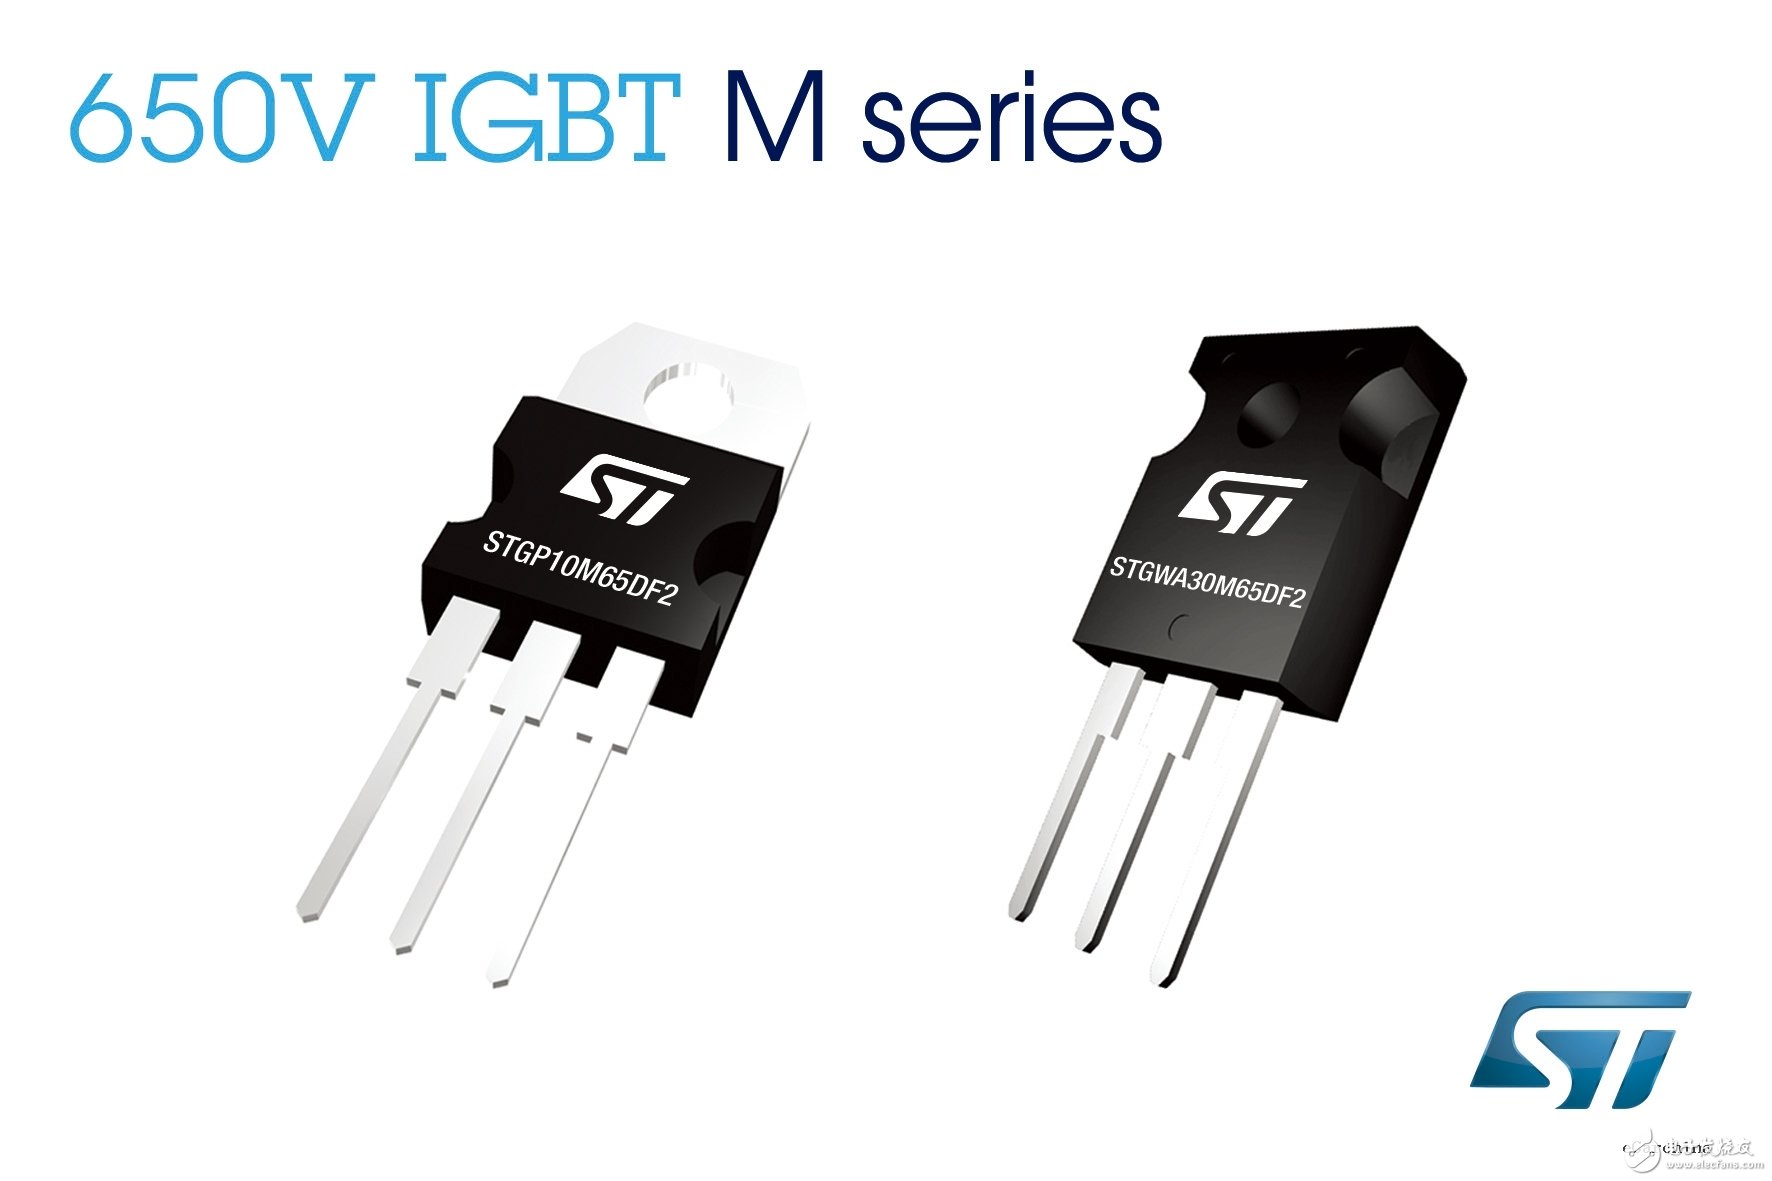 意法半导体（ST）的650V IGBT可大幅提升20kHz功率转换应用的能效